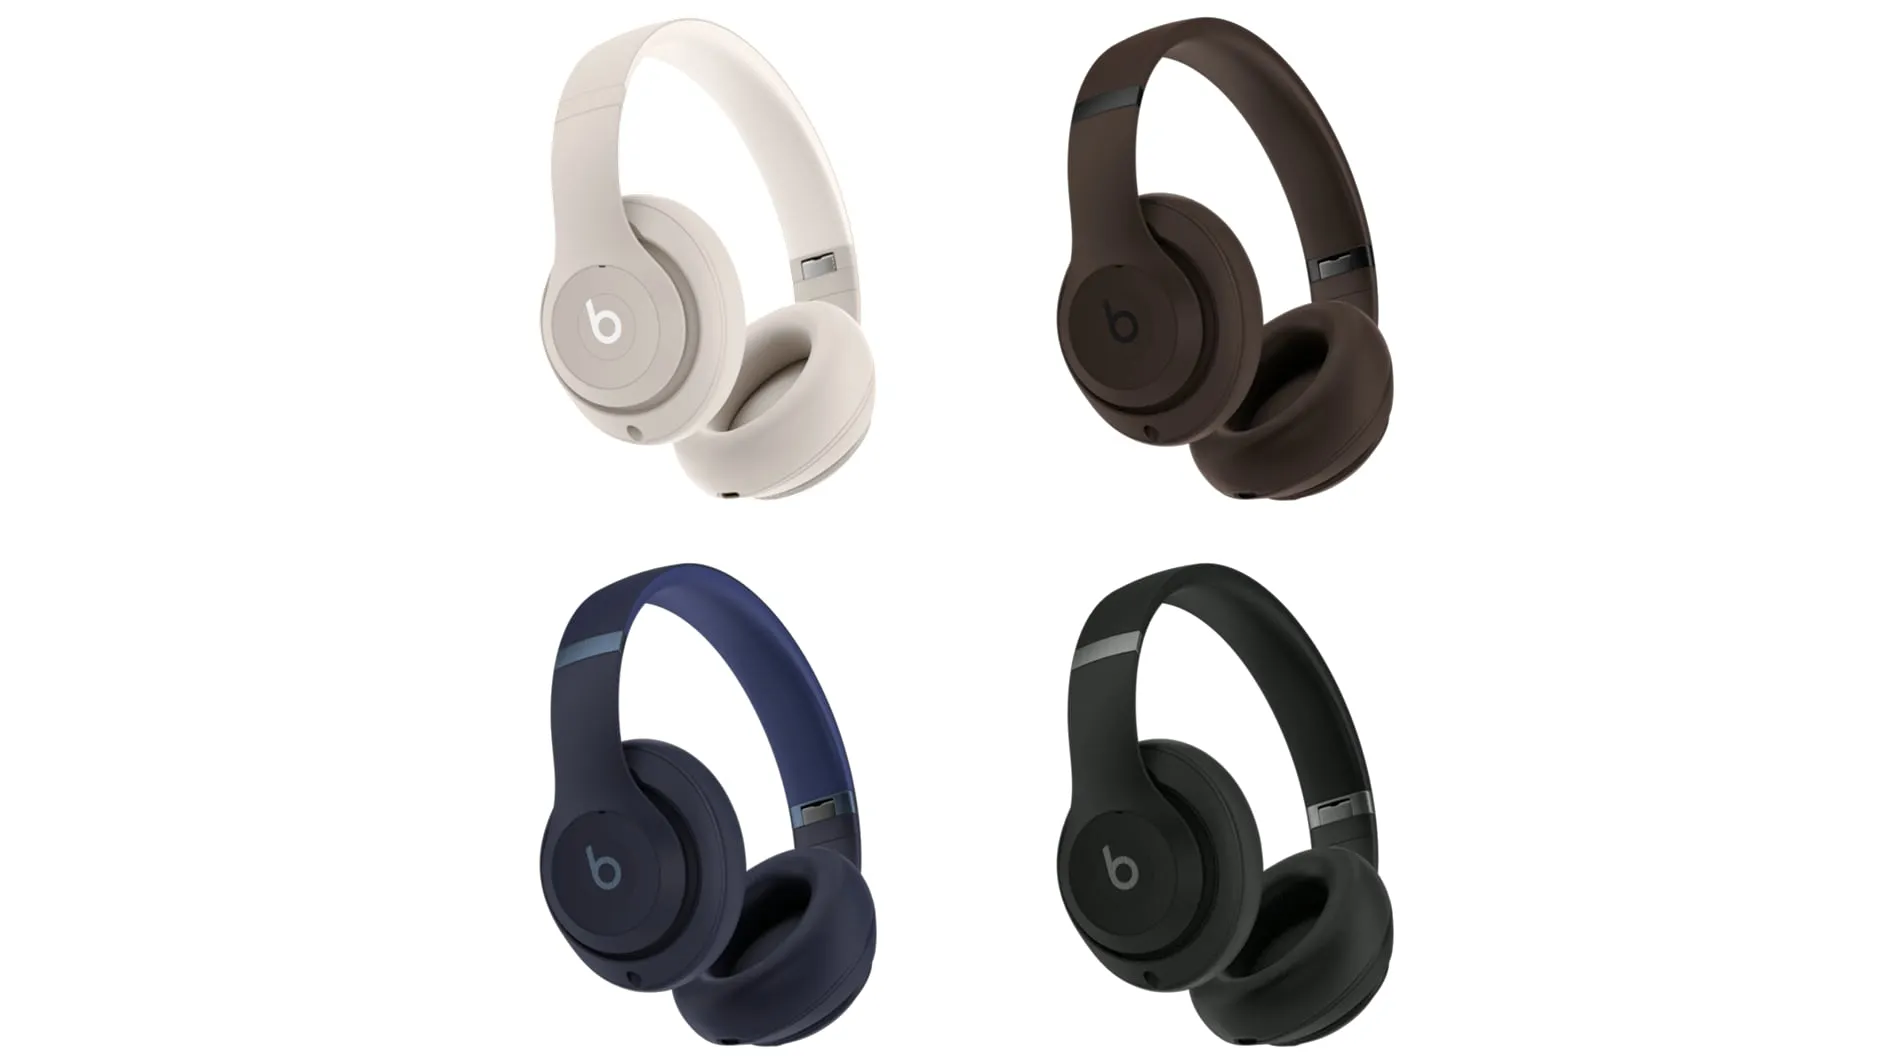 Vier Beats Studio Pro Over-Ear-Kopfhörer in Weiß, Braun, Dunkelblau und Schwarz vor einem weißen Hintergrund